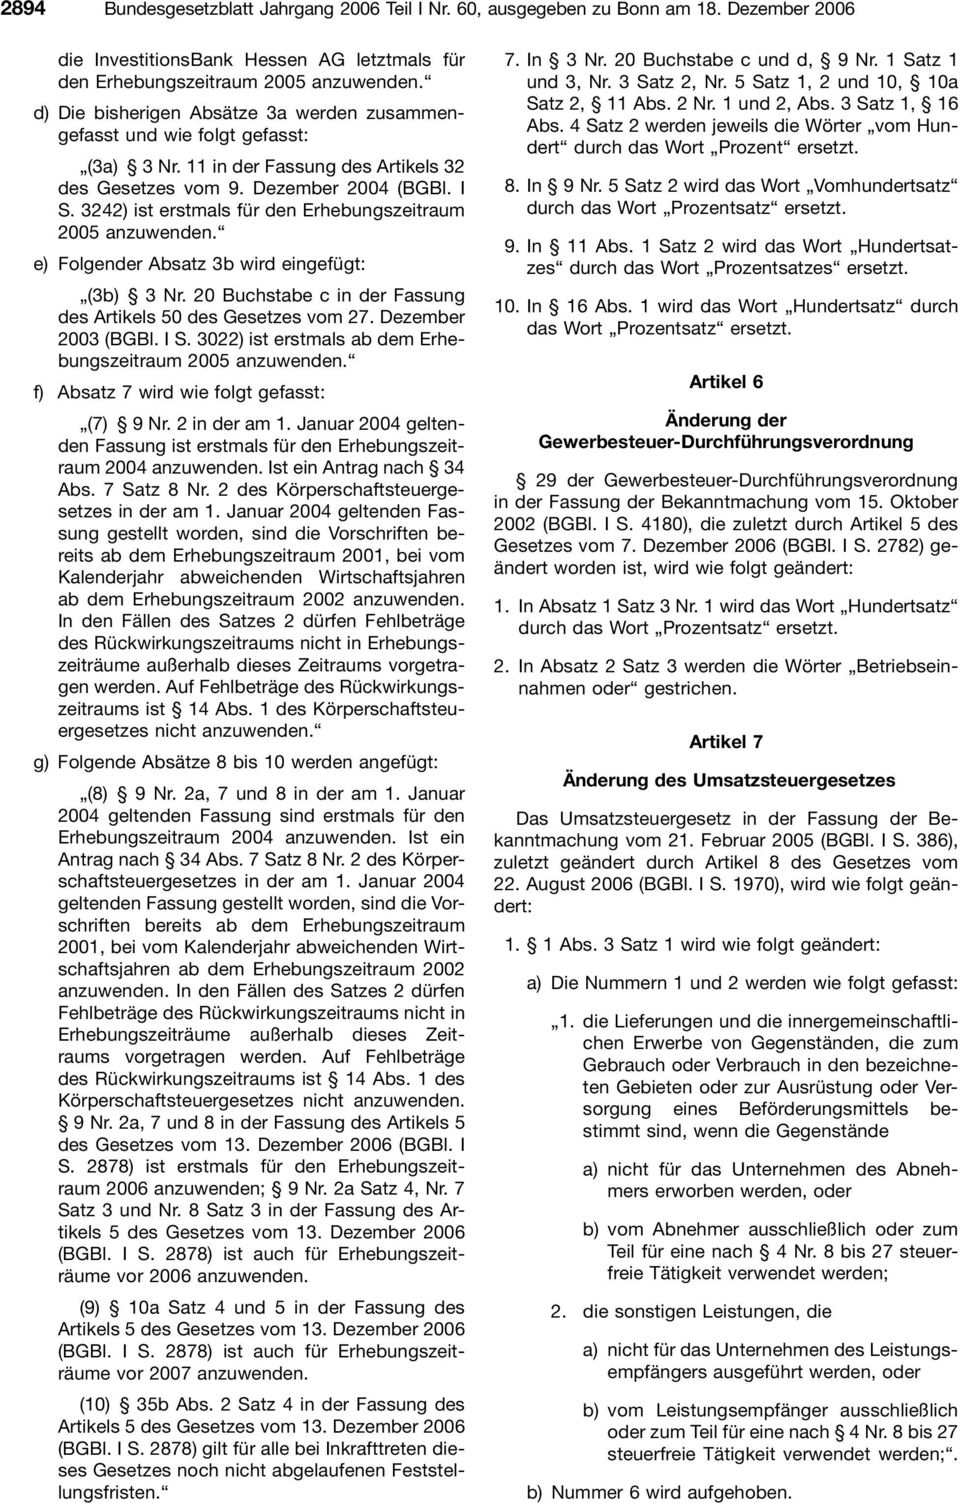 3242) ist erstmals für den Erhebungszeitraum 2005 anzuwenden. e) Folgender Absatz 3b wird eingefügt: (3b) 3 Nr. 20 Buchstabe c in der Fassung des Artikels 50 des Gesetzes vom 27. Dezember 2003 (BGBl.